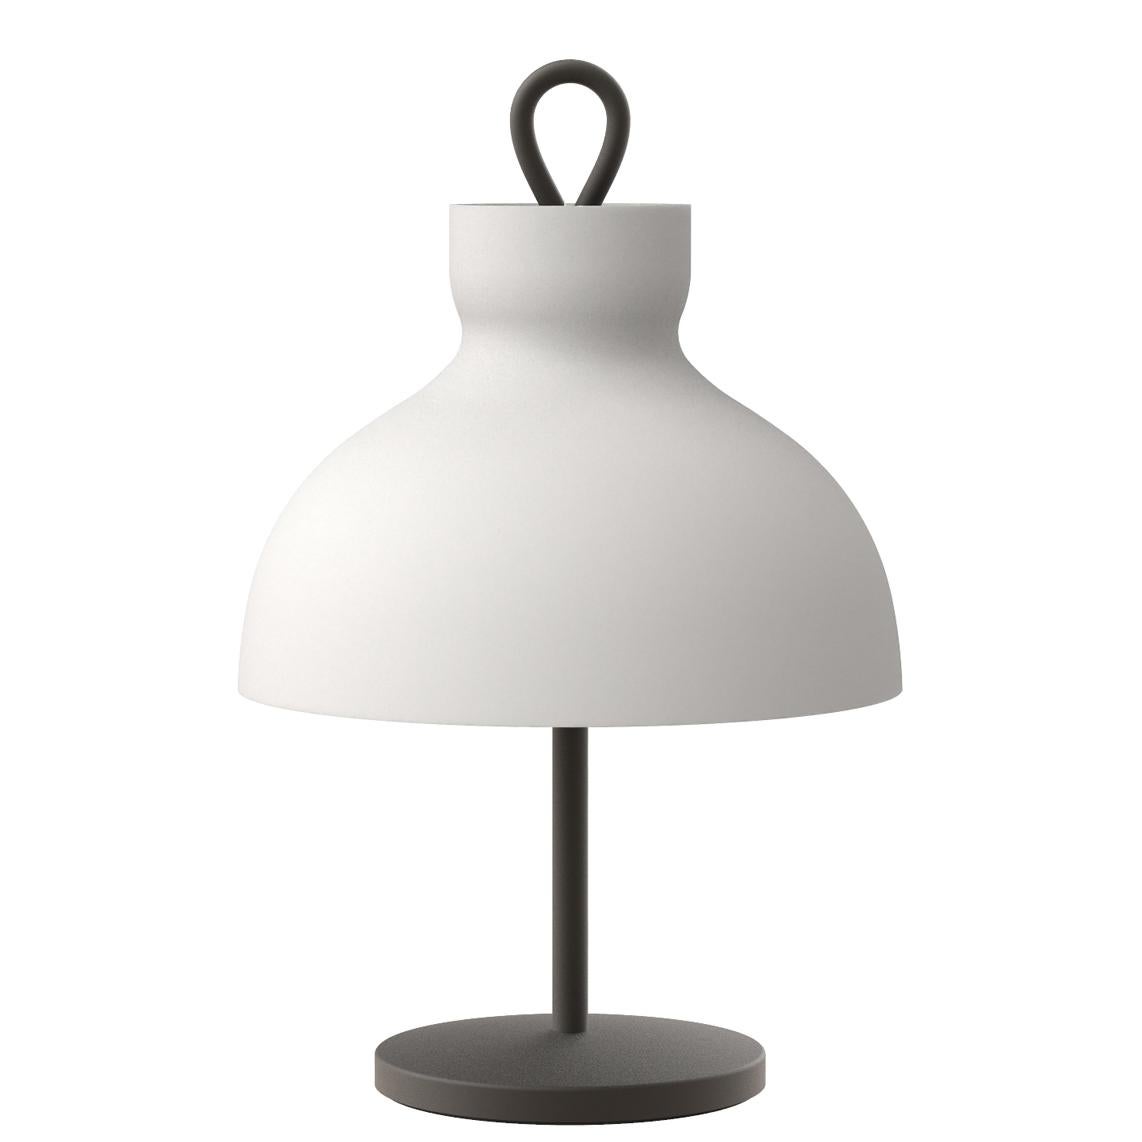 Ignazio Gardella 'Arenzano Bassa' Table Lamp in Glass and Satin Nickel For Sale 4